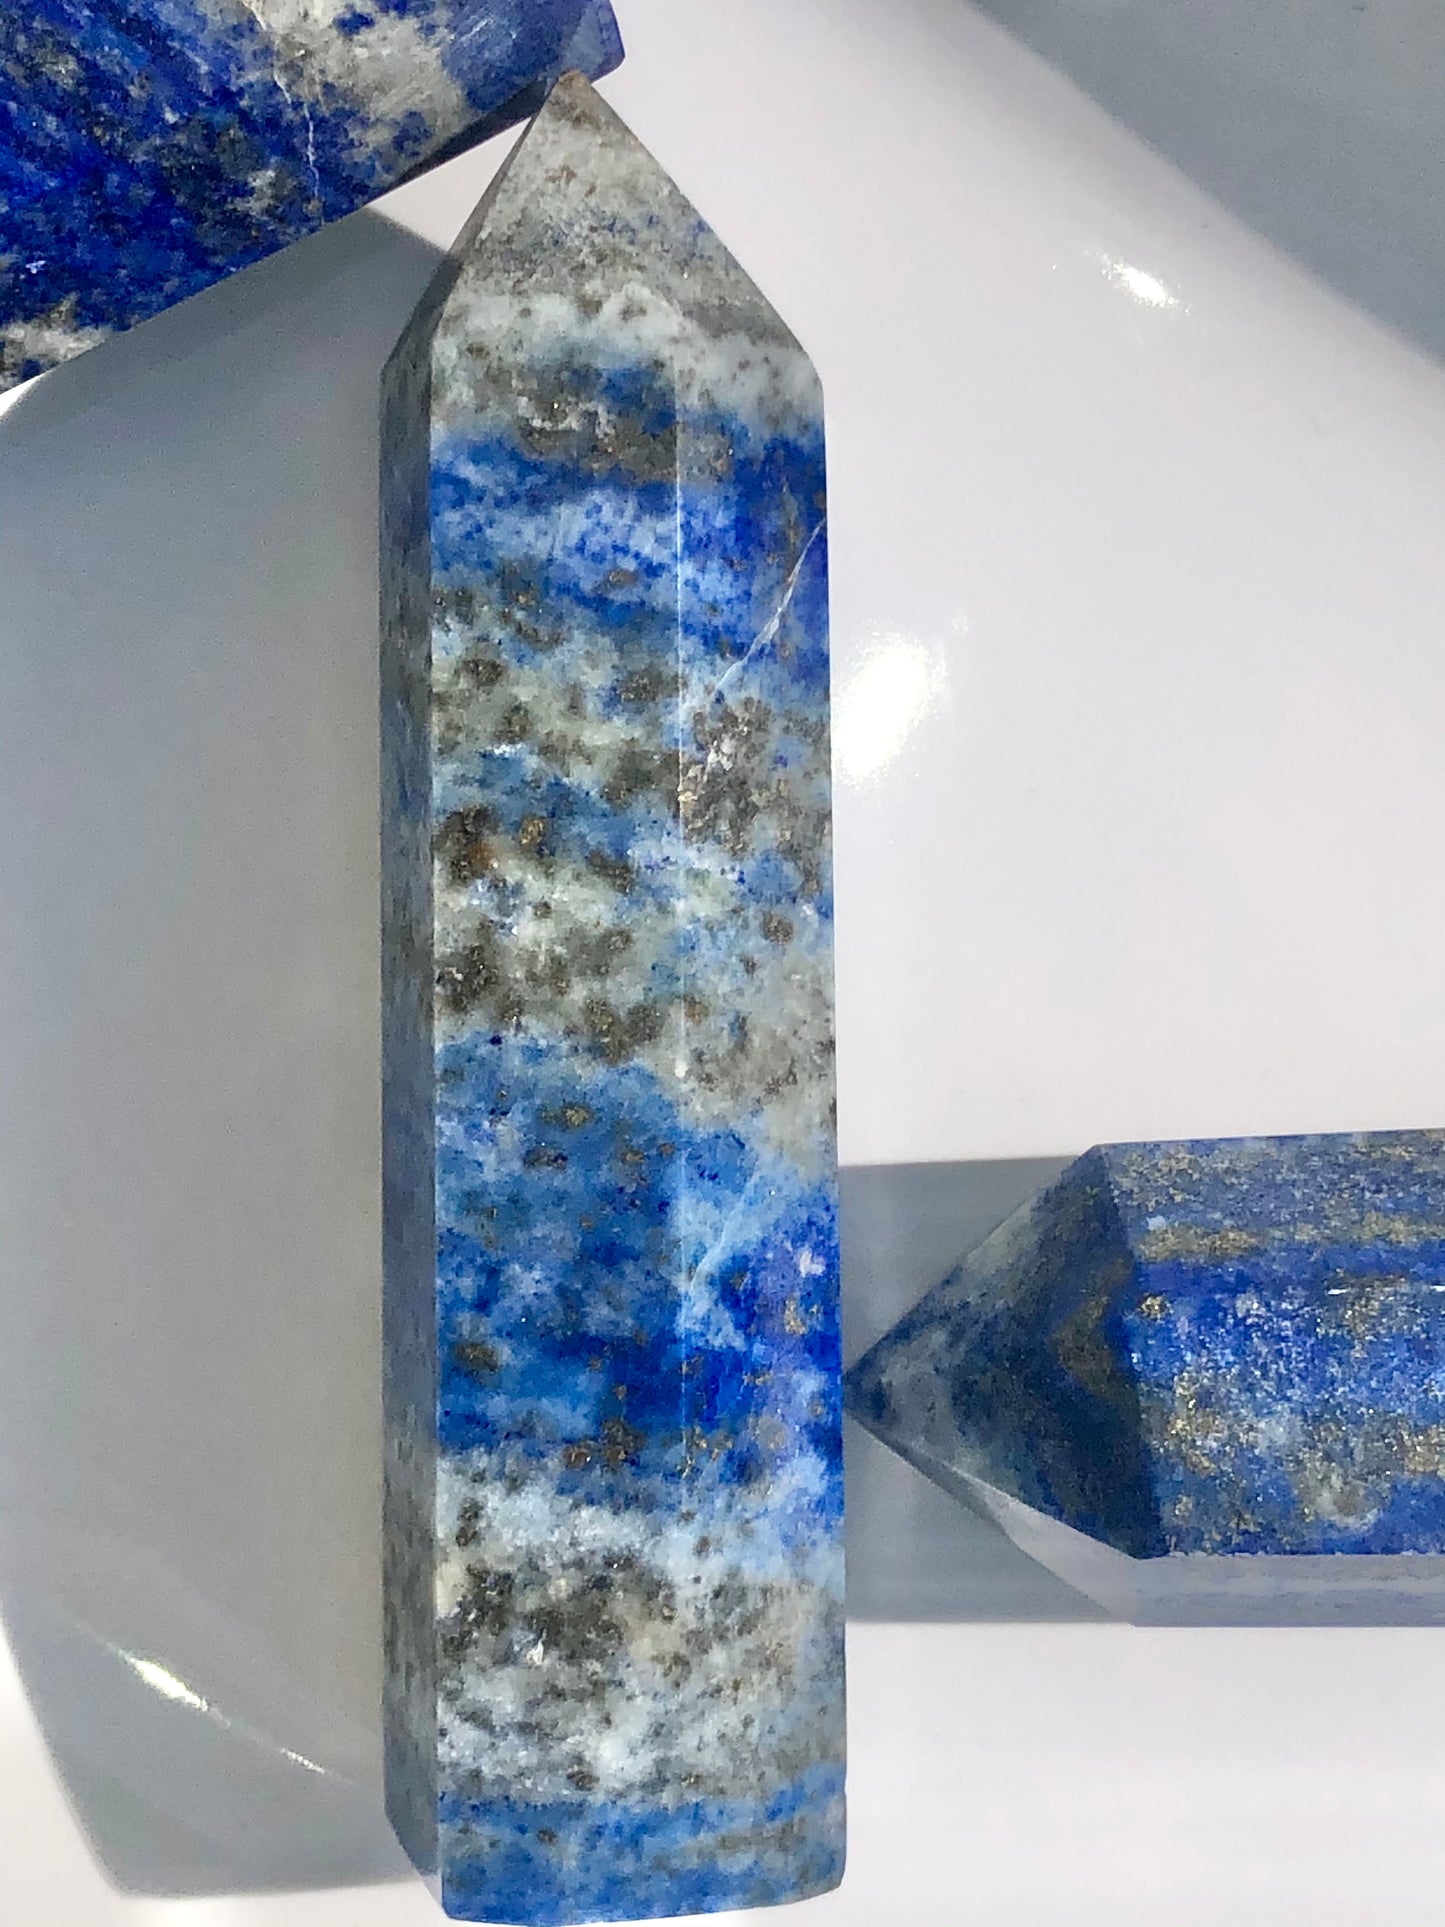 Polished Lapis Lazuli Point Crystal